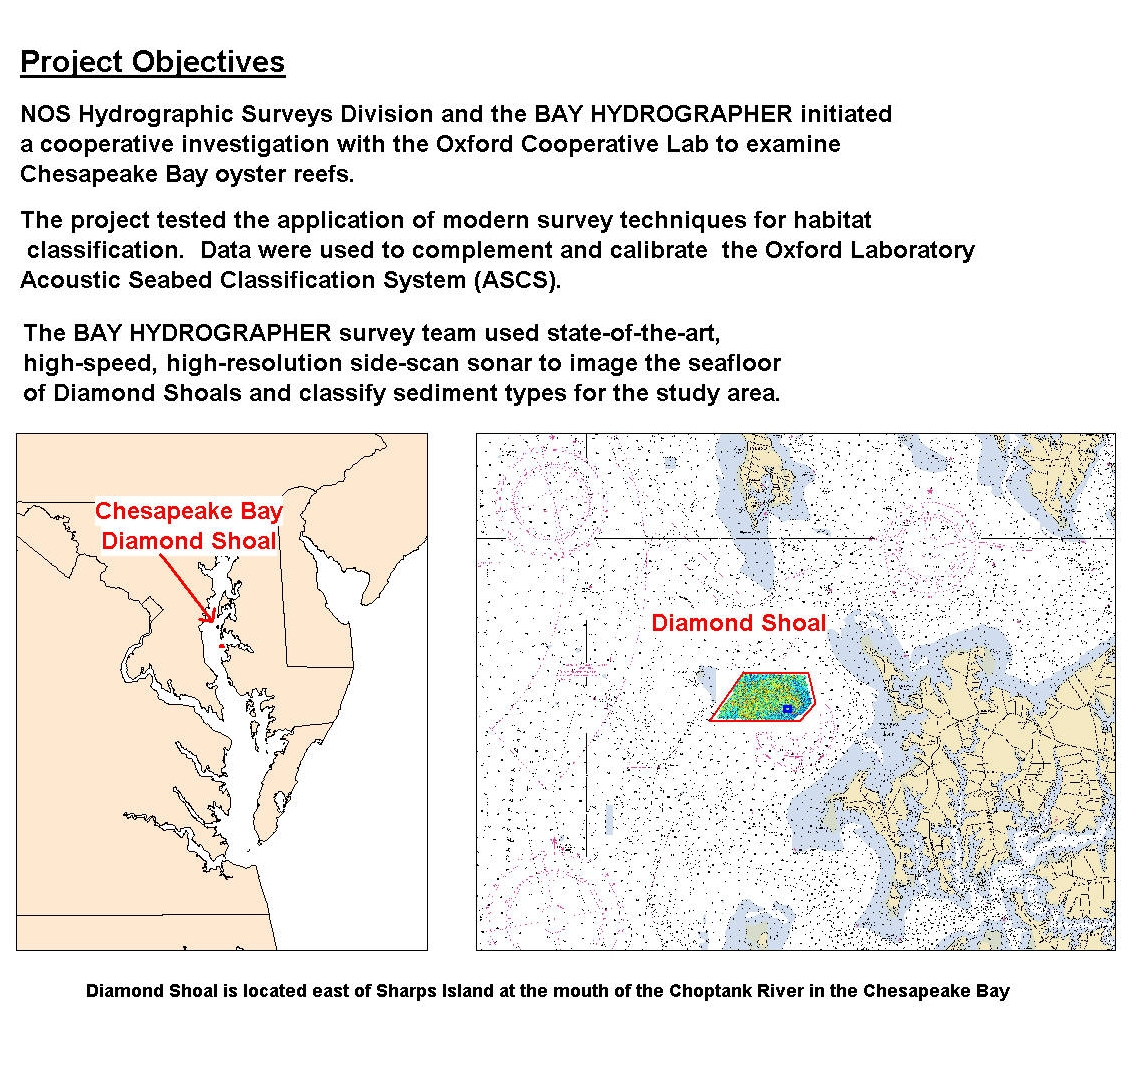 Chesapeake Bay Diamond Shoal Project